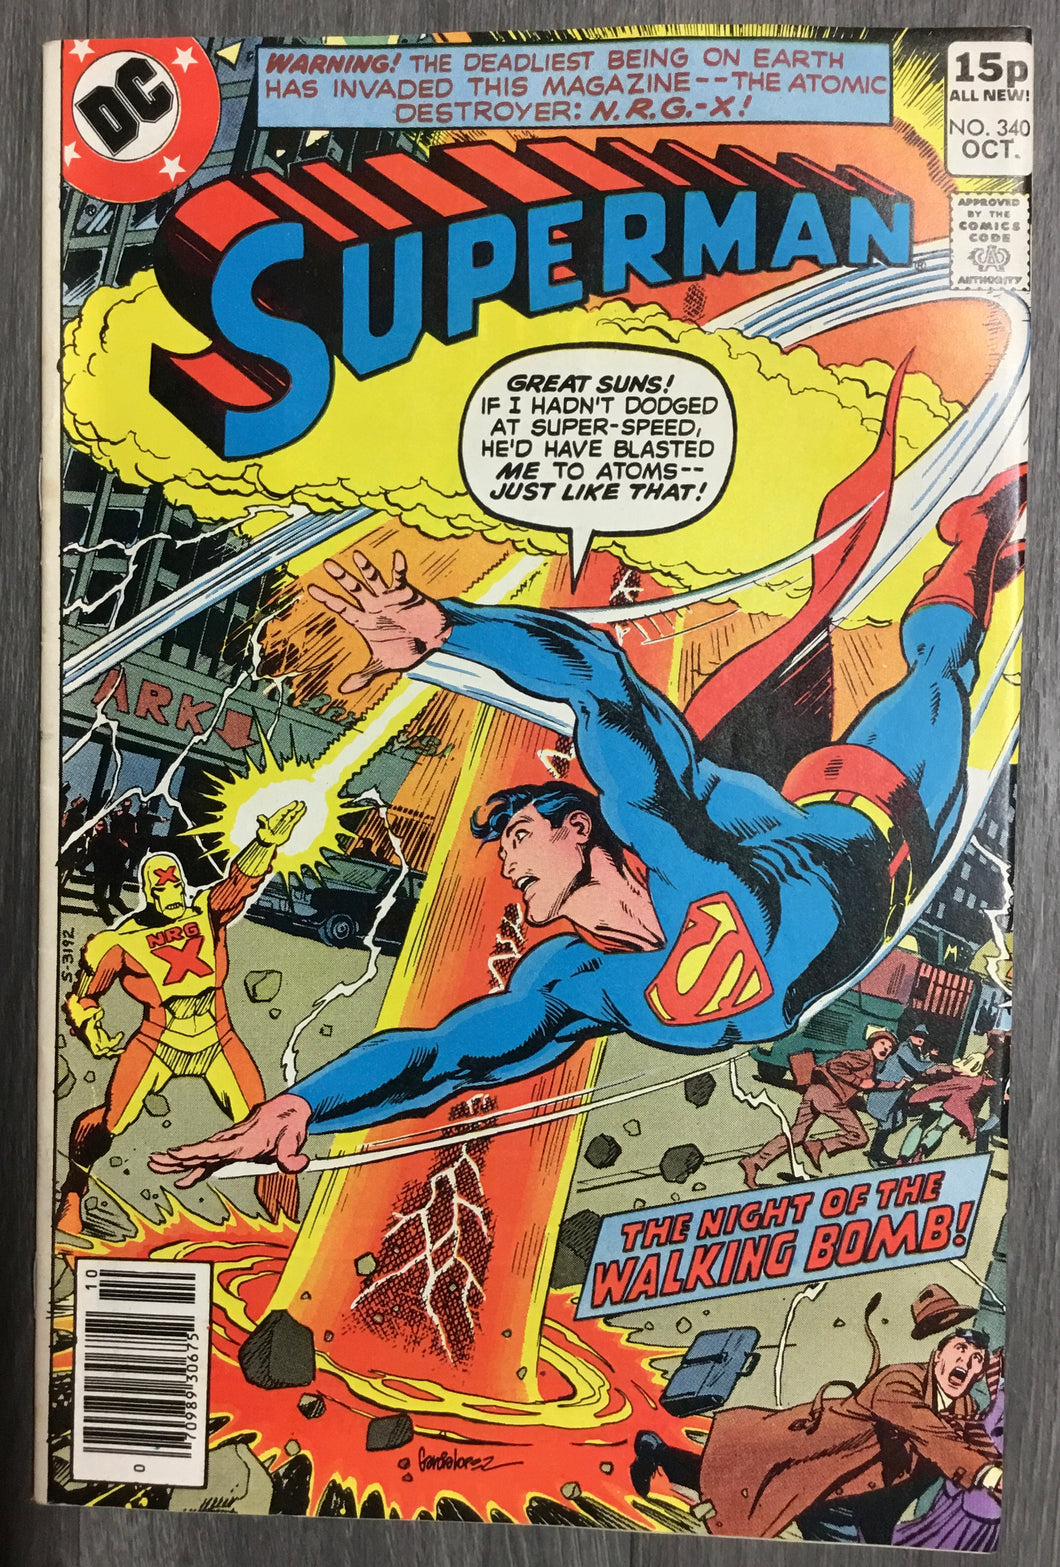 Superman No. #340 1979 DC Comics